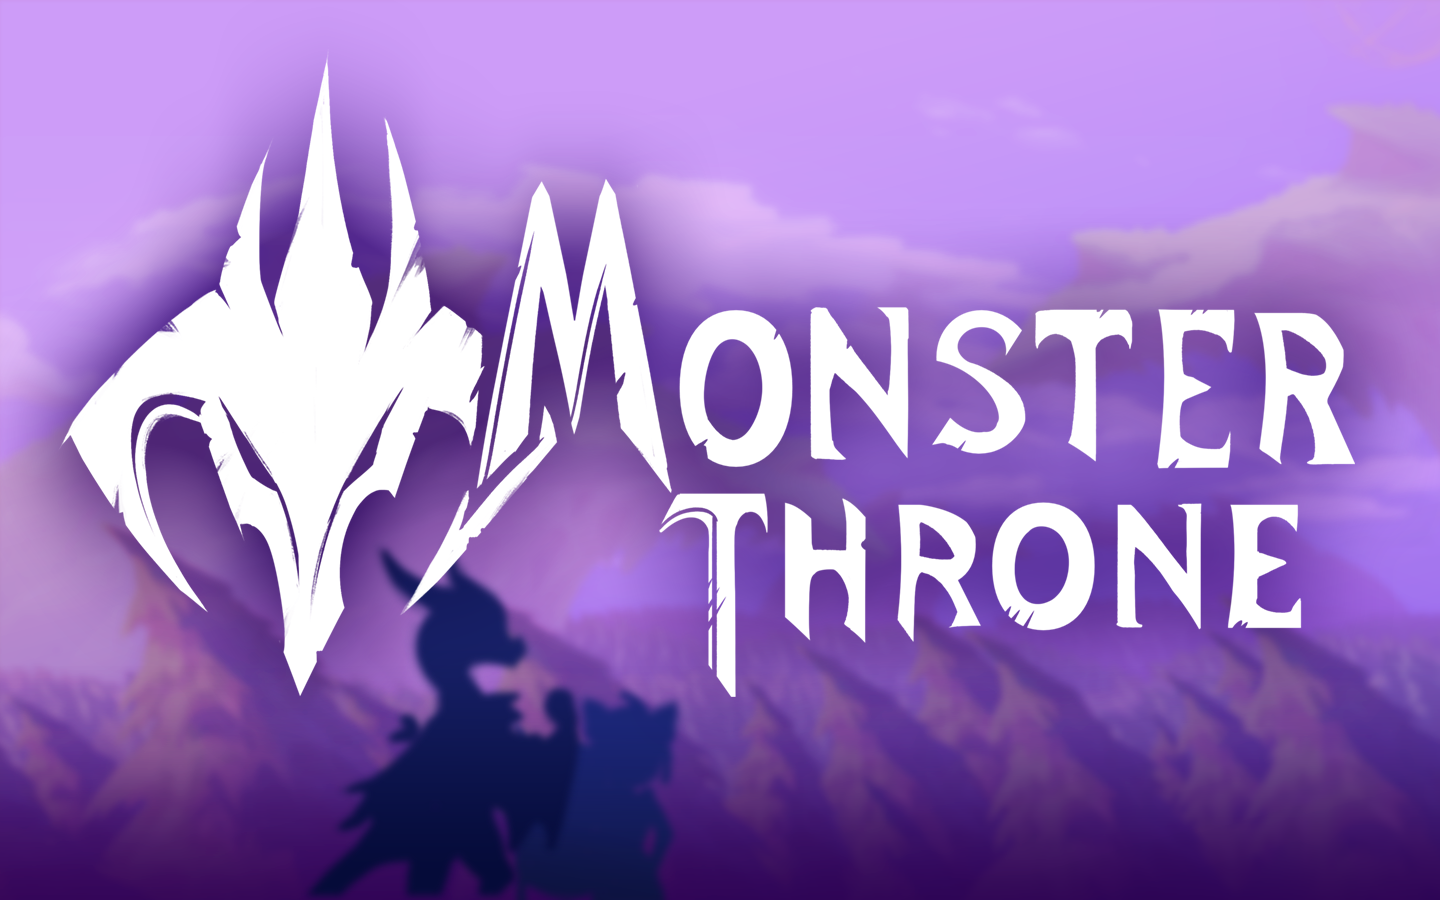 Monster Throne